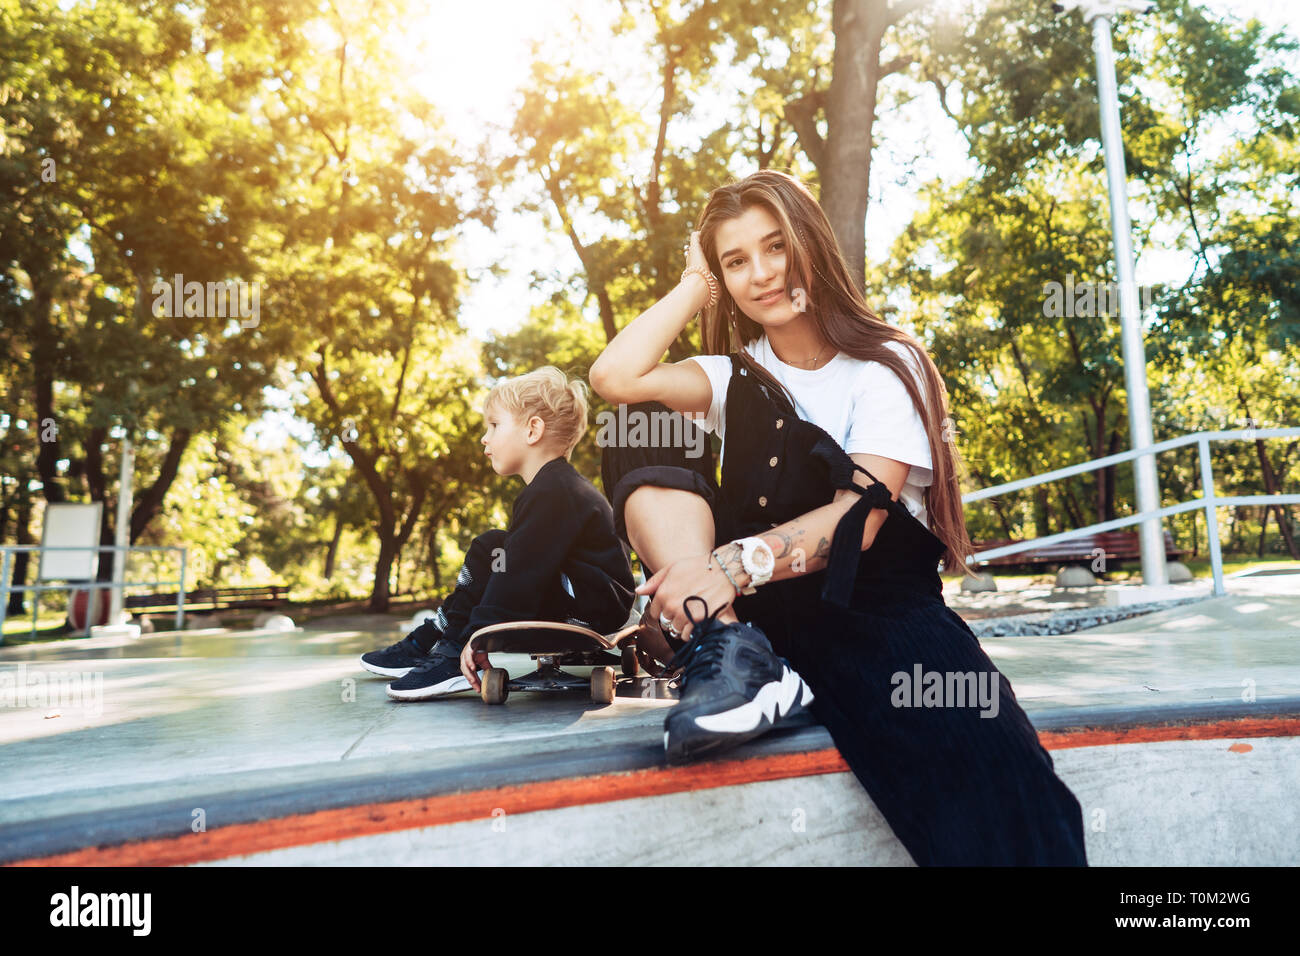 Belle jeune hipster maman et petit fils à l'skatepark Banque D'Images